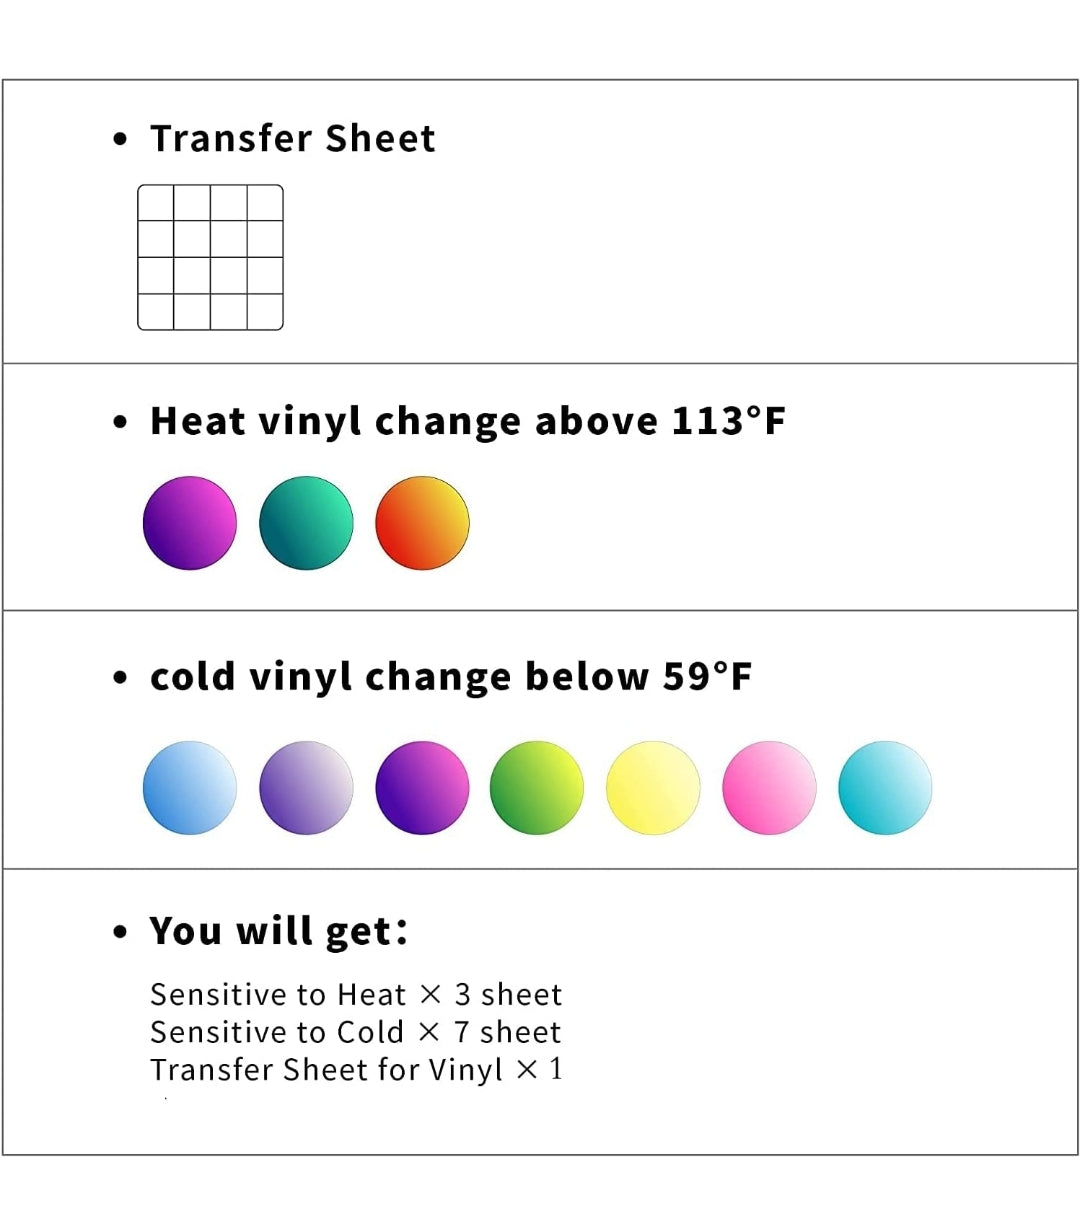 Vinyl Adhesivo Permanente Premium que Cambia de color con el Caliente/Frío